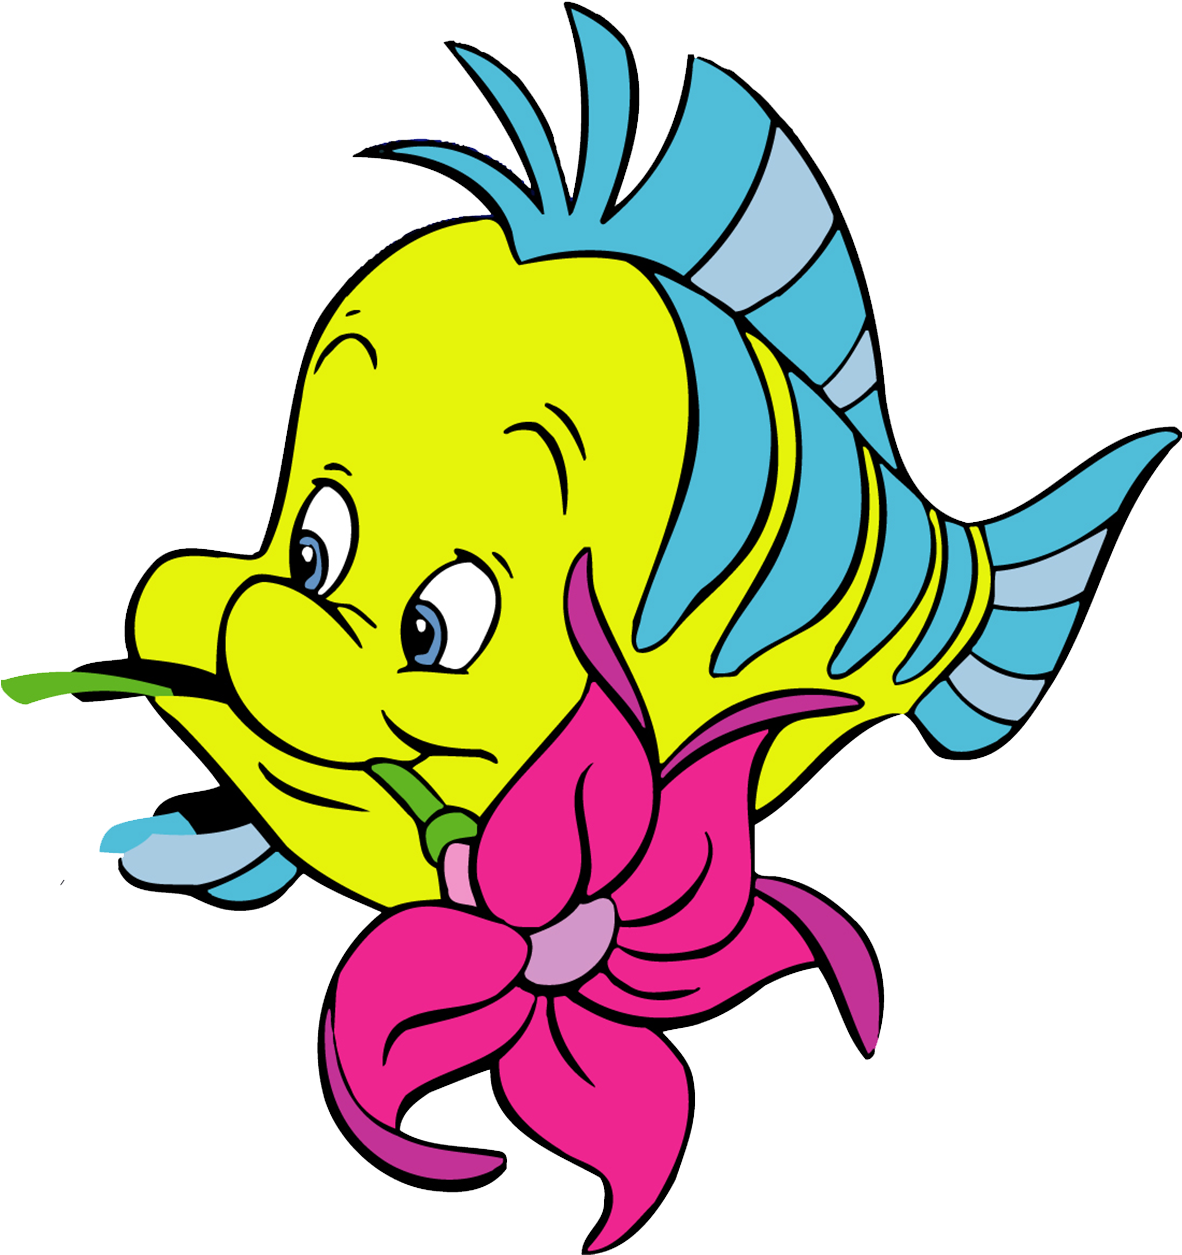 Flounder Fish Cartoon Clip Art - Personagem Da Pequena Sereia (1181x1318)